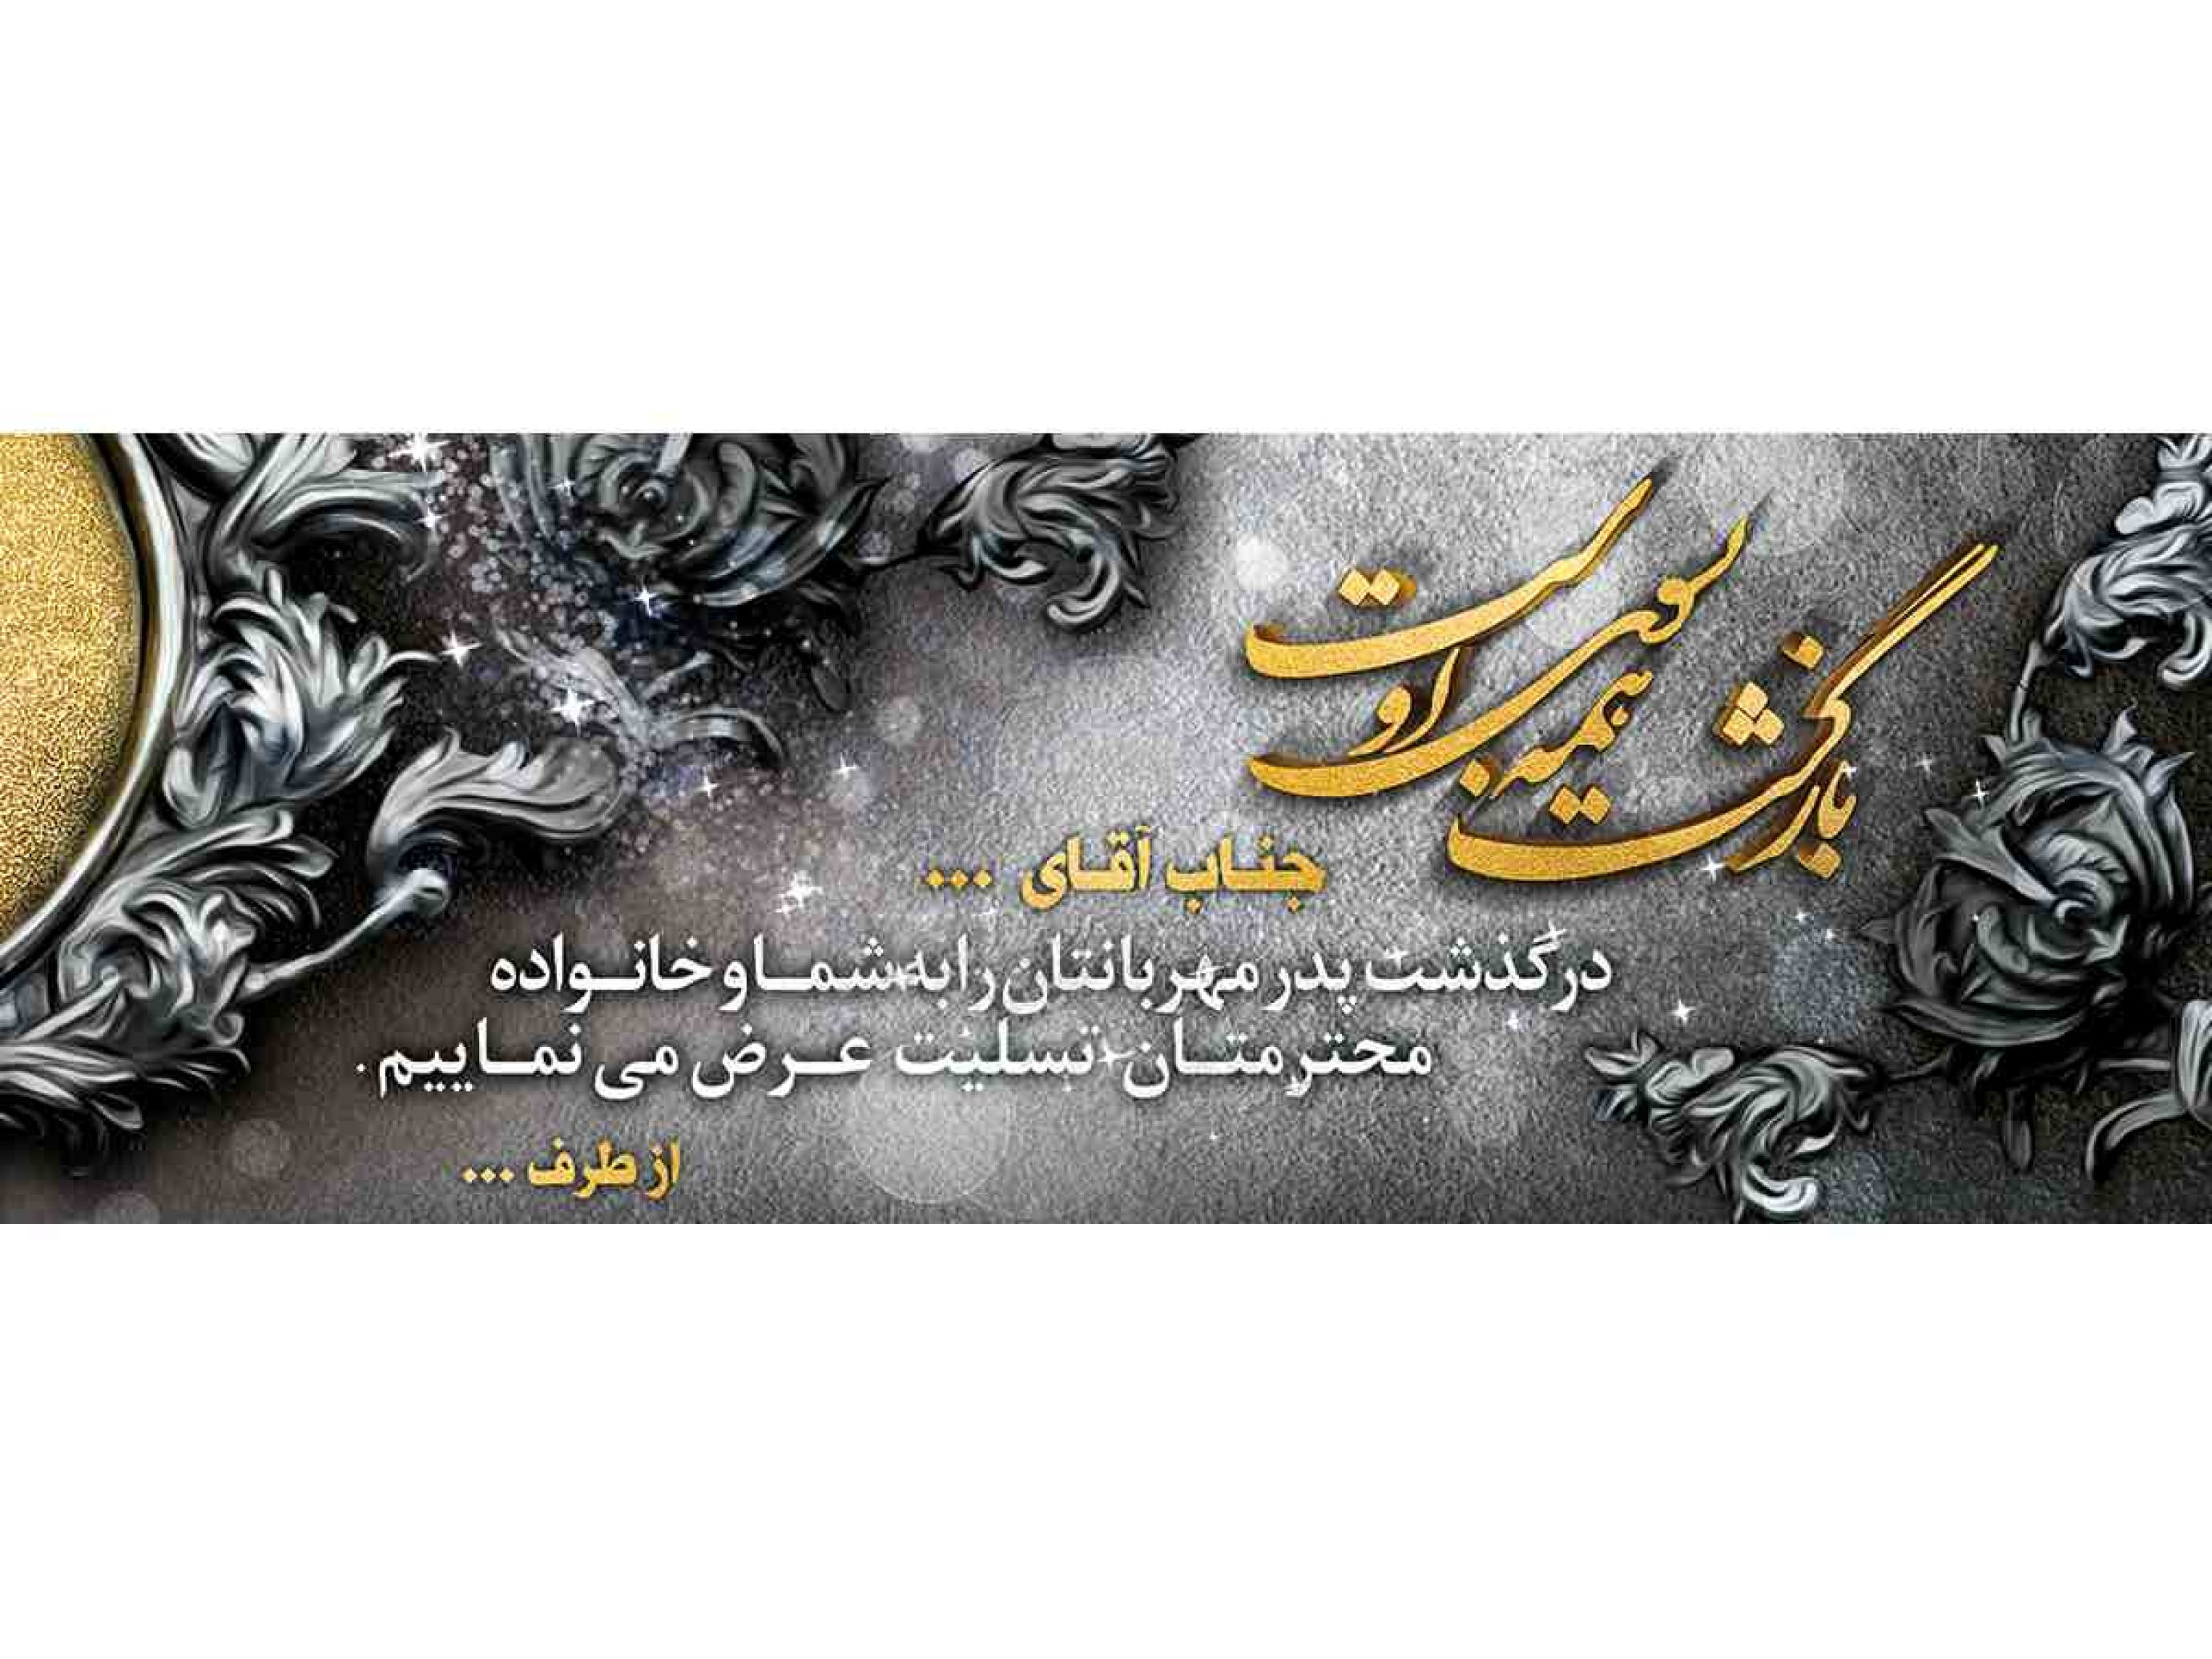  فروشگاه اینترنتی چاپ بنر تسلیت پدر با نصب در تهران و کرج فقط بهشت یار 